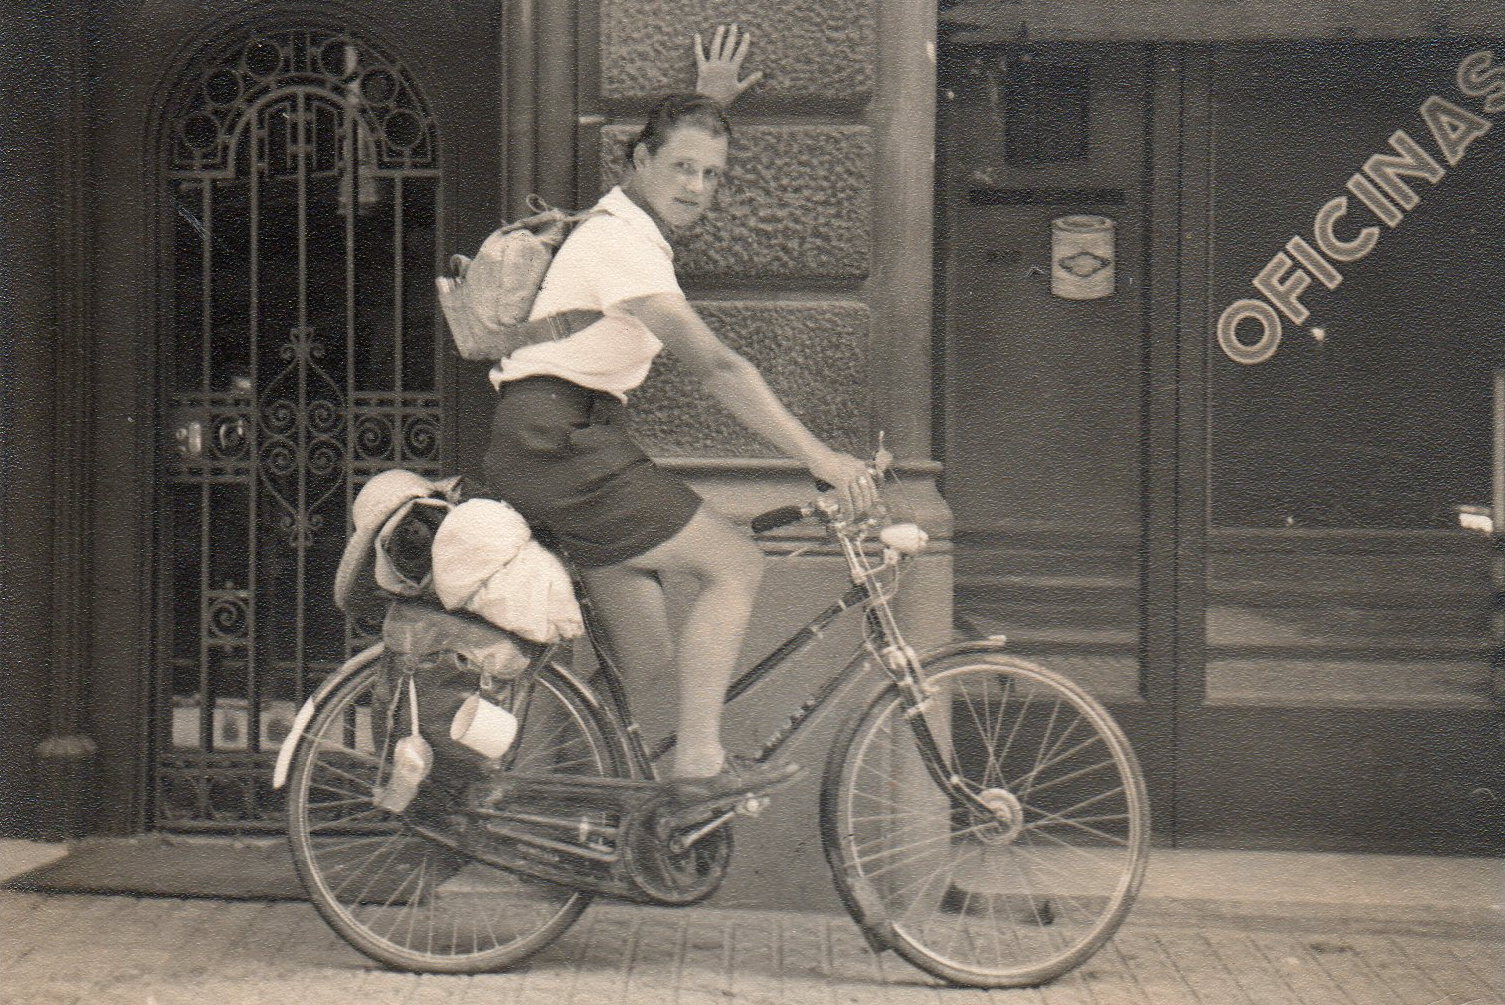 Dervla Murphy in Barcelona, Spain. 1950s